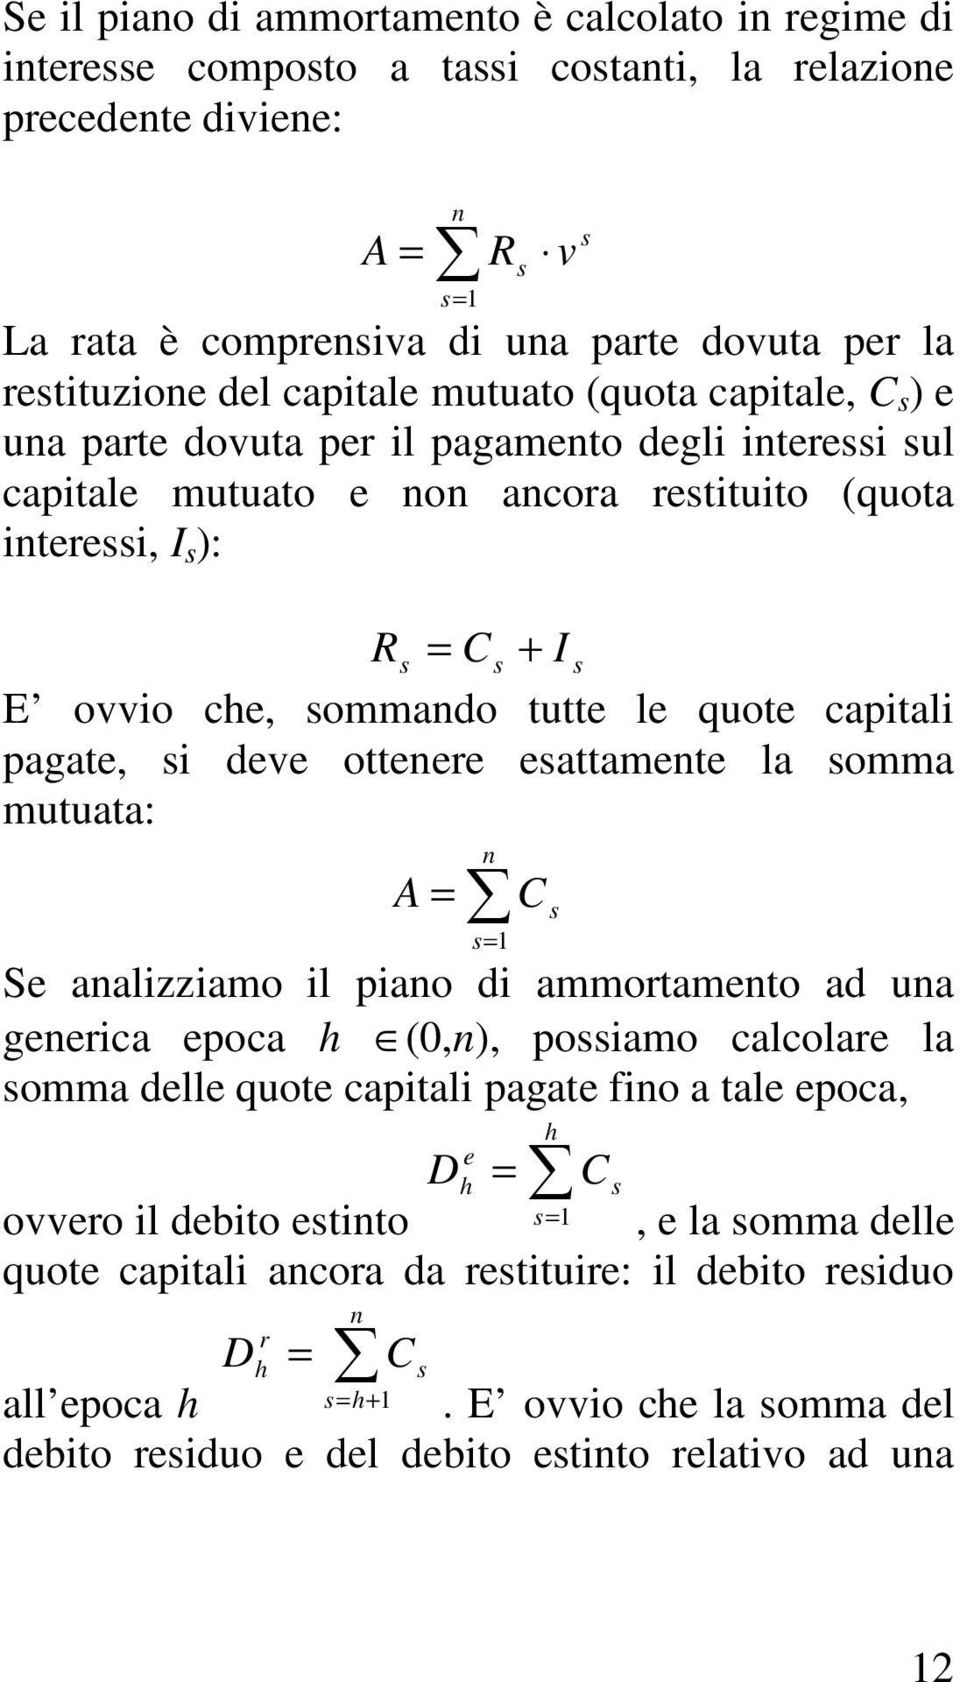 ovvio che, sommando tutte le quote capitali pagate, si deve ottenere esattamente la somma mutuata: A = n C s s= 1 Se analizziamo il piano di ammortamento ad una generica epoca h (0,n), possiamo